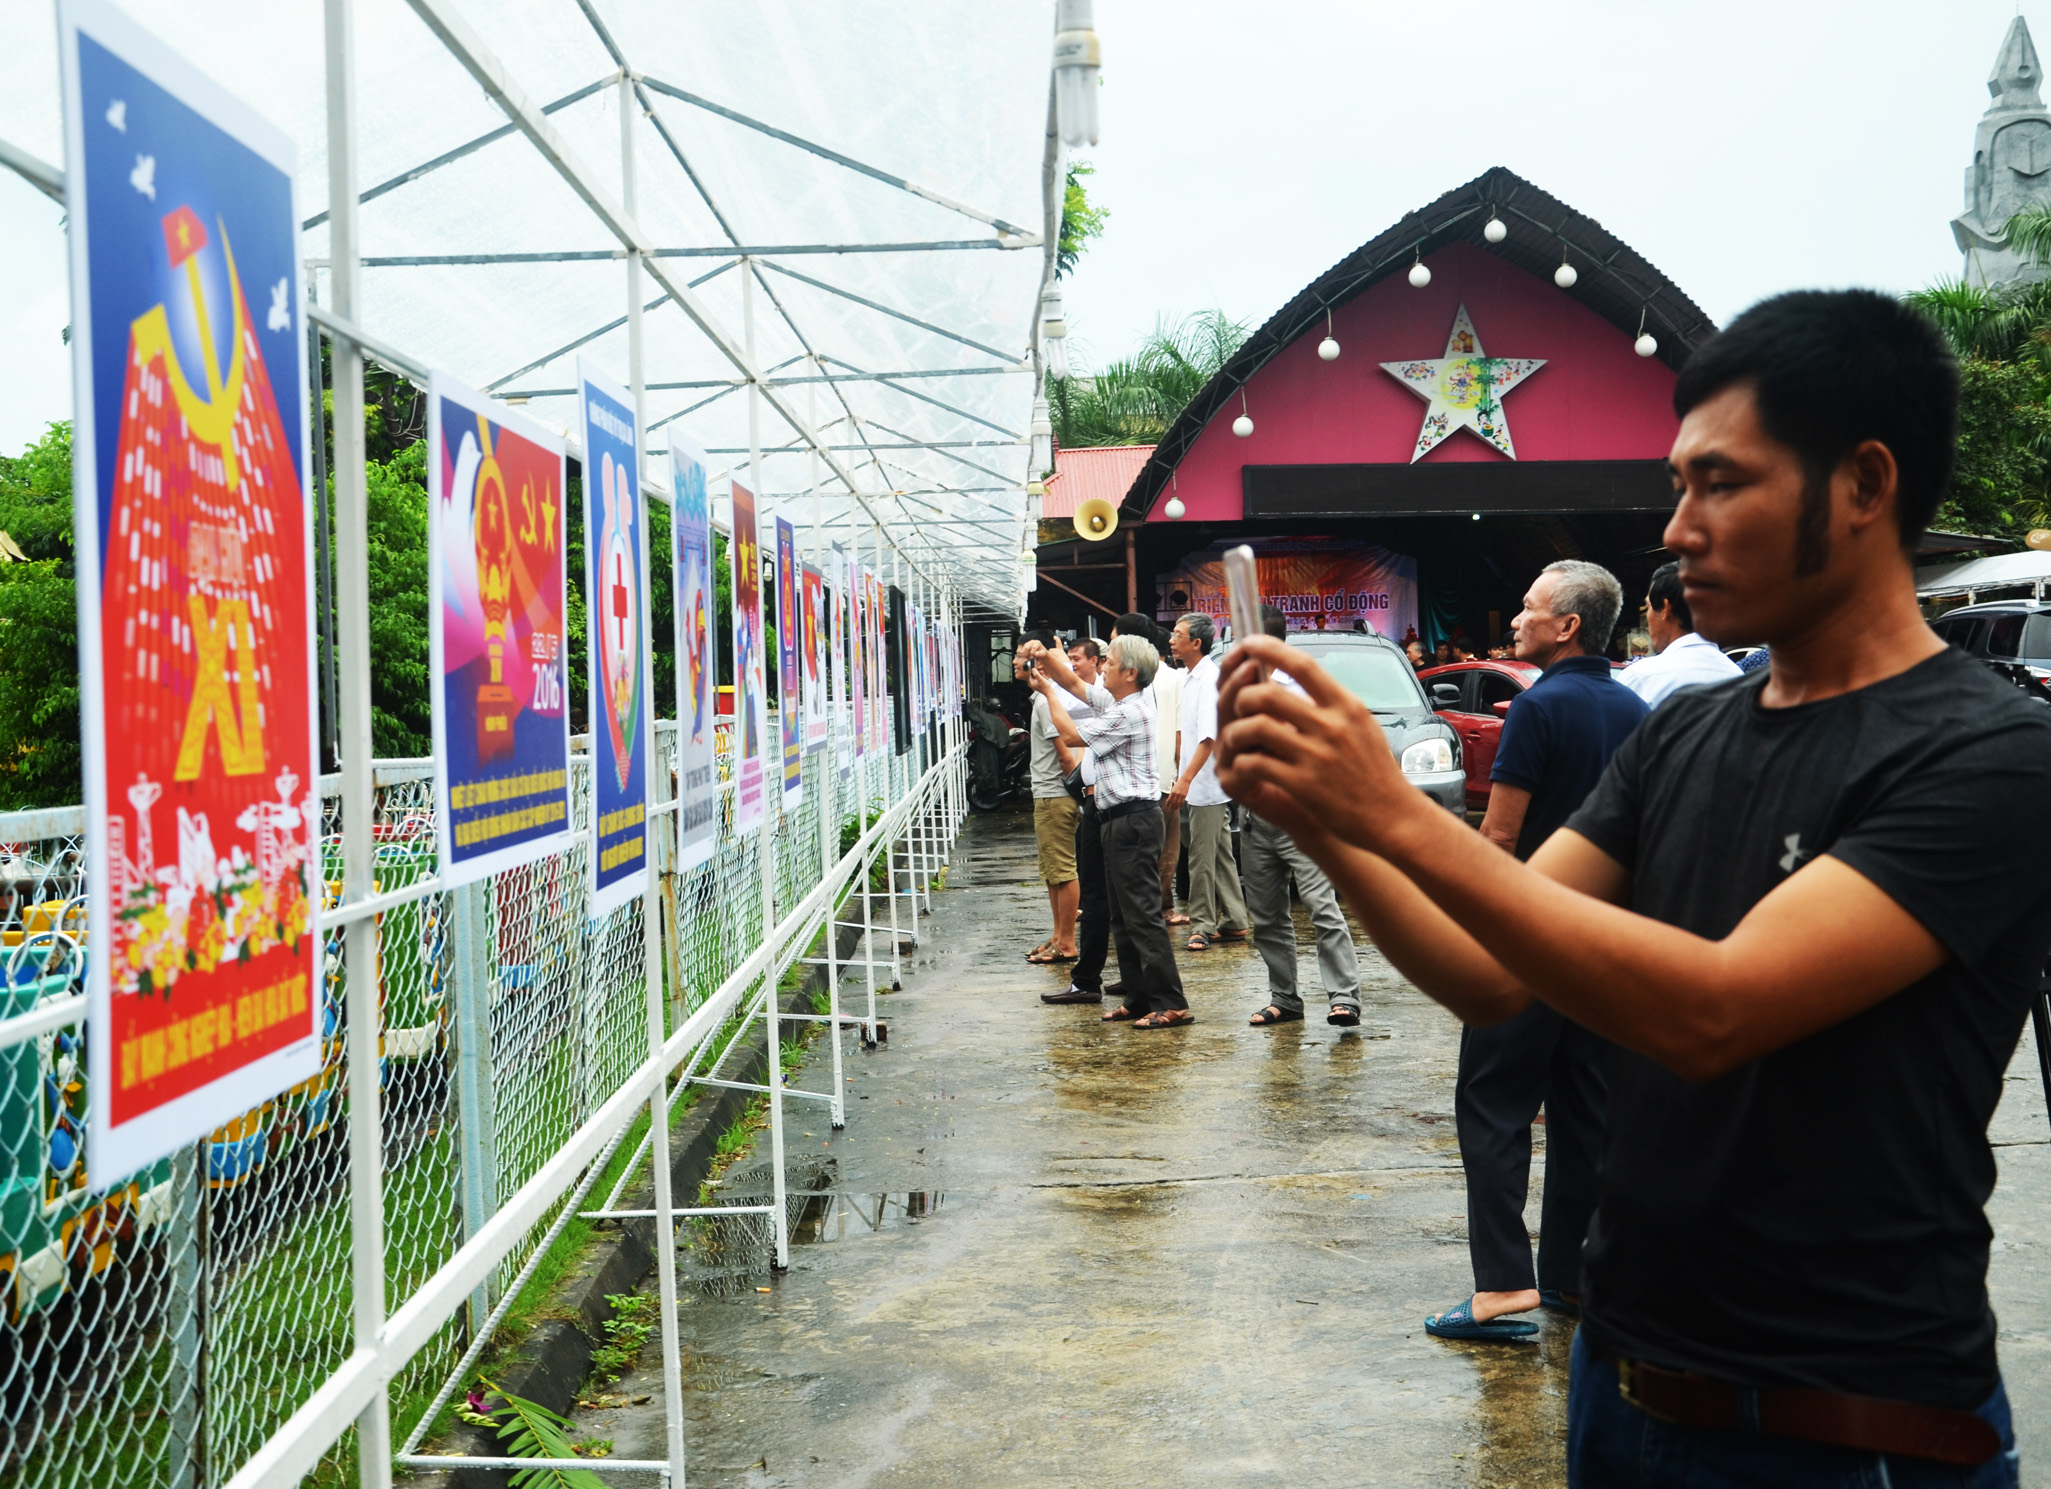 Năm 2017, họa sĩ Nông Quốc Hiệp là người đầu tiên ở Quảng Ninh tổ chức triển lãm cá nhân về tranh cổ động.